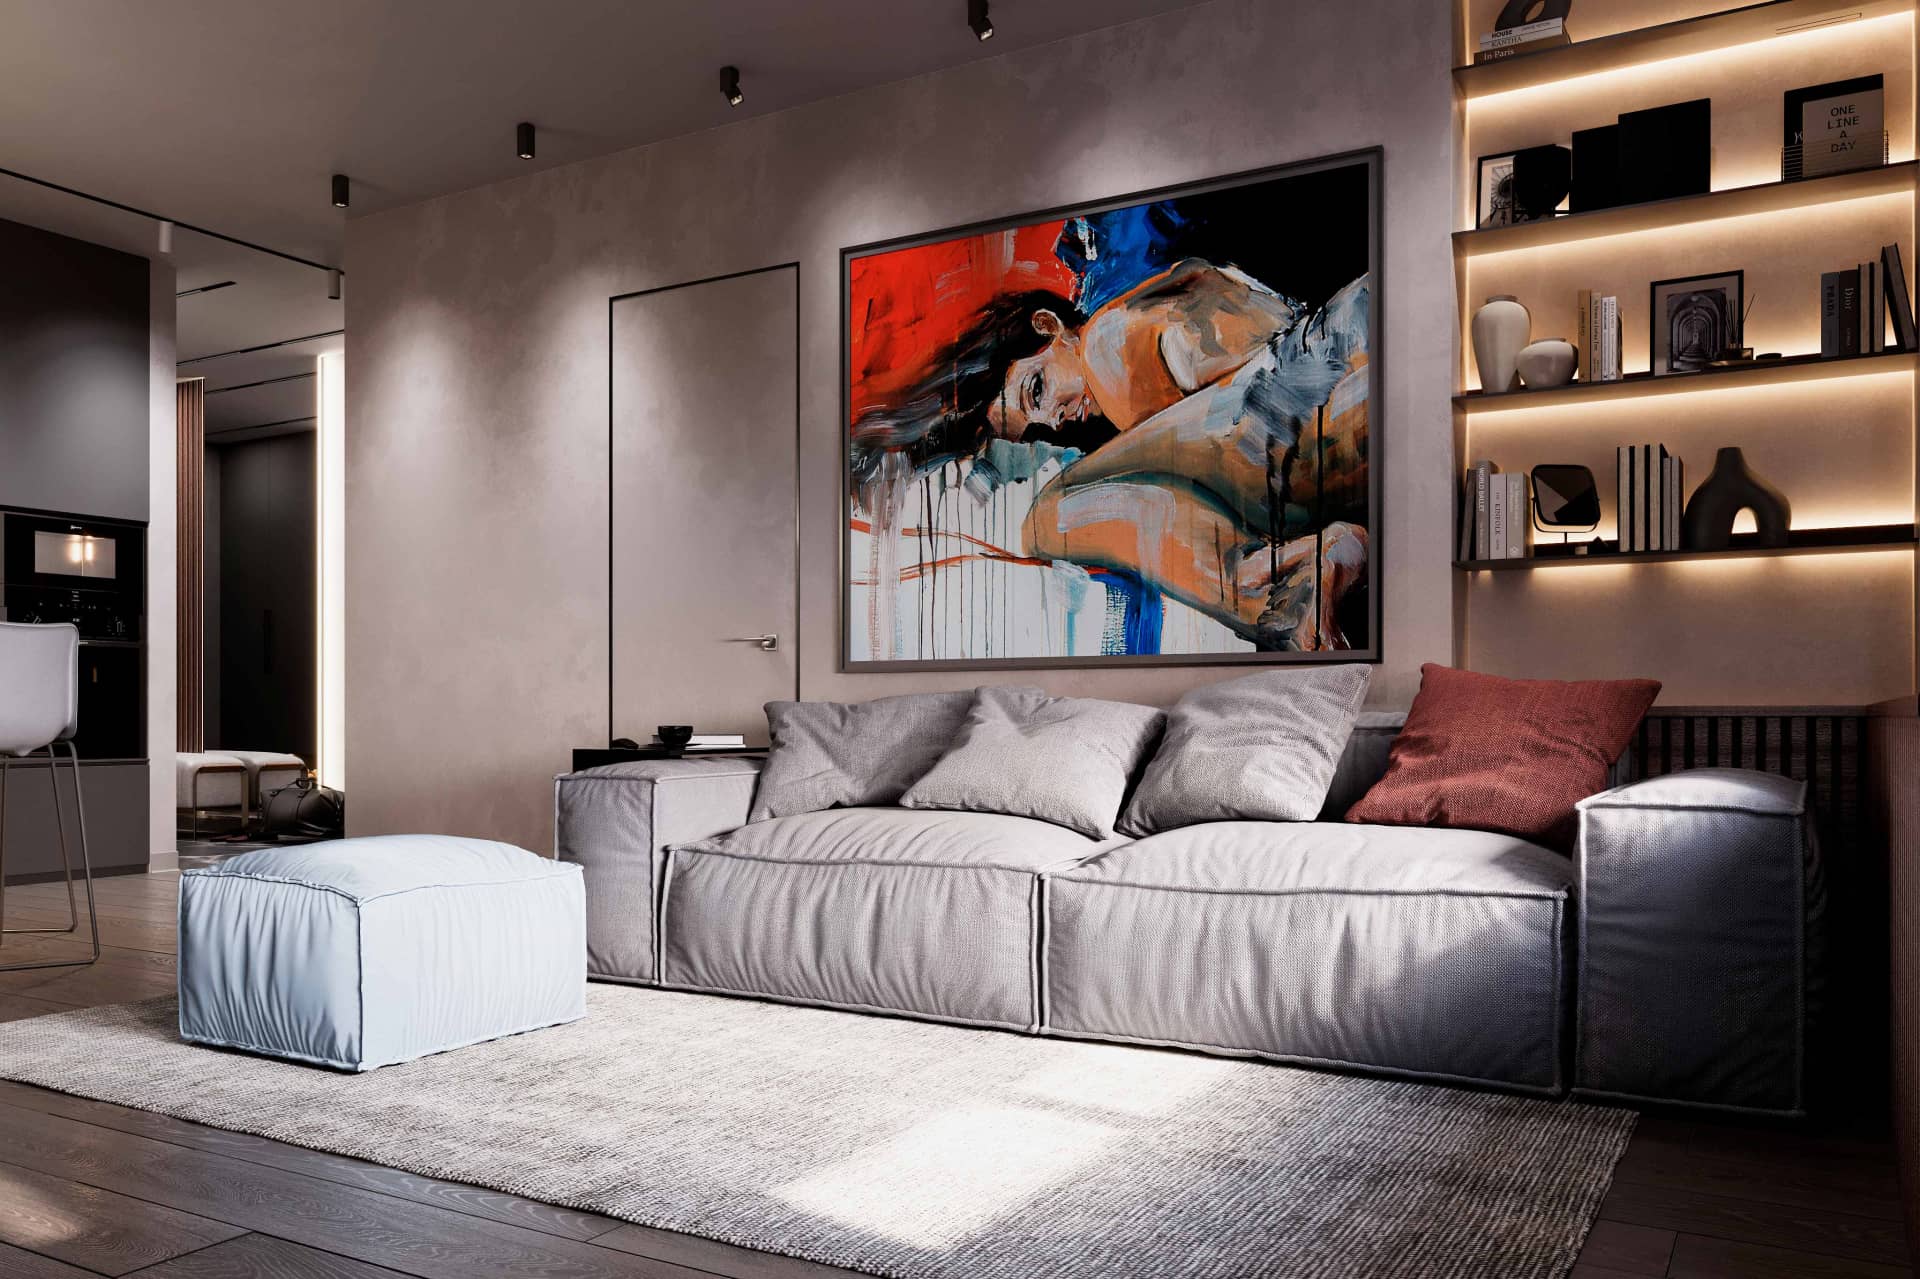 Оформление интерьера гостиной-кухни трехкомнатной квартиры в светло серый цвет в современном стиле. Фото № 62802.